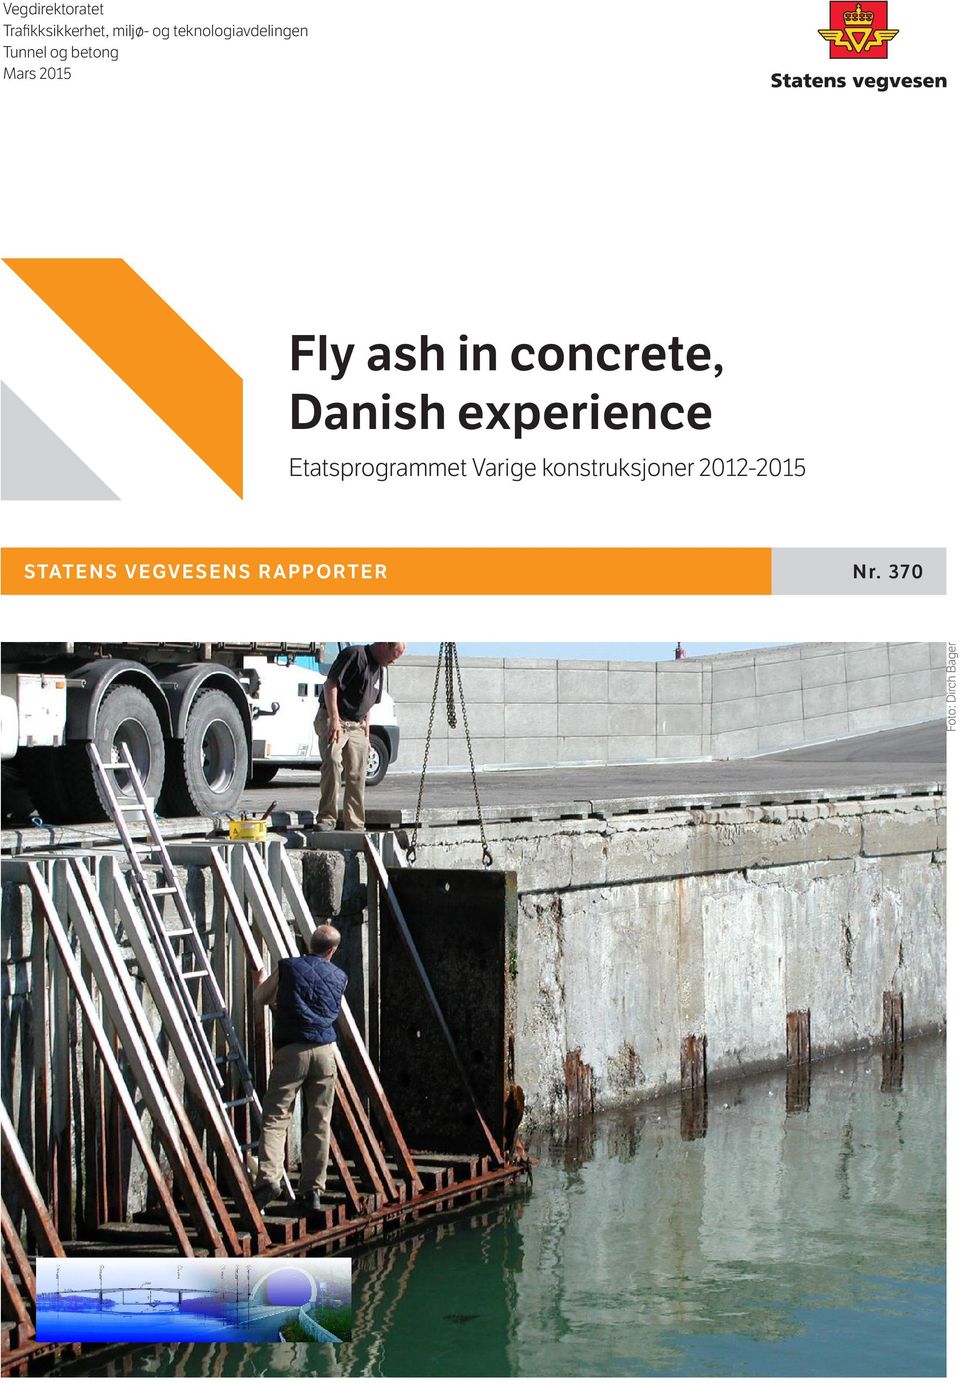 concrete, Danish experience Etatsprogrammet Varige